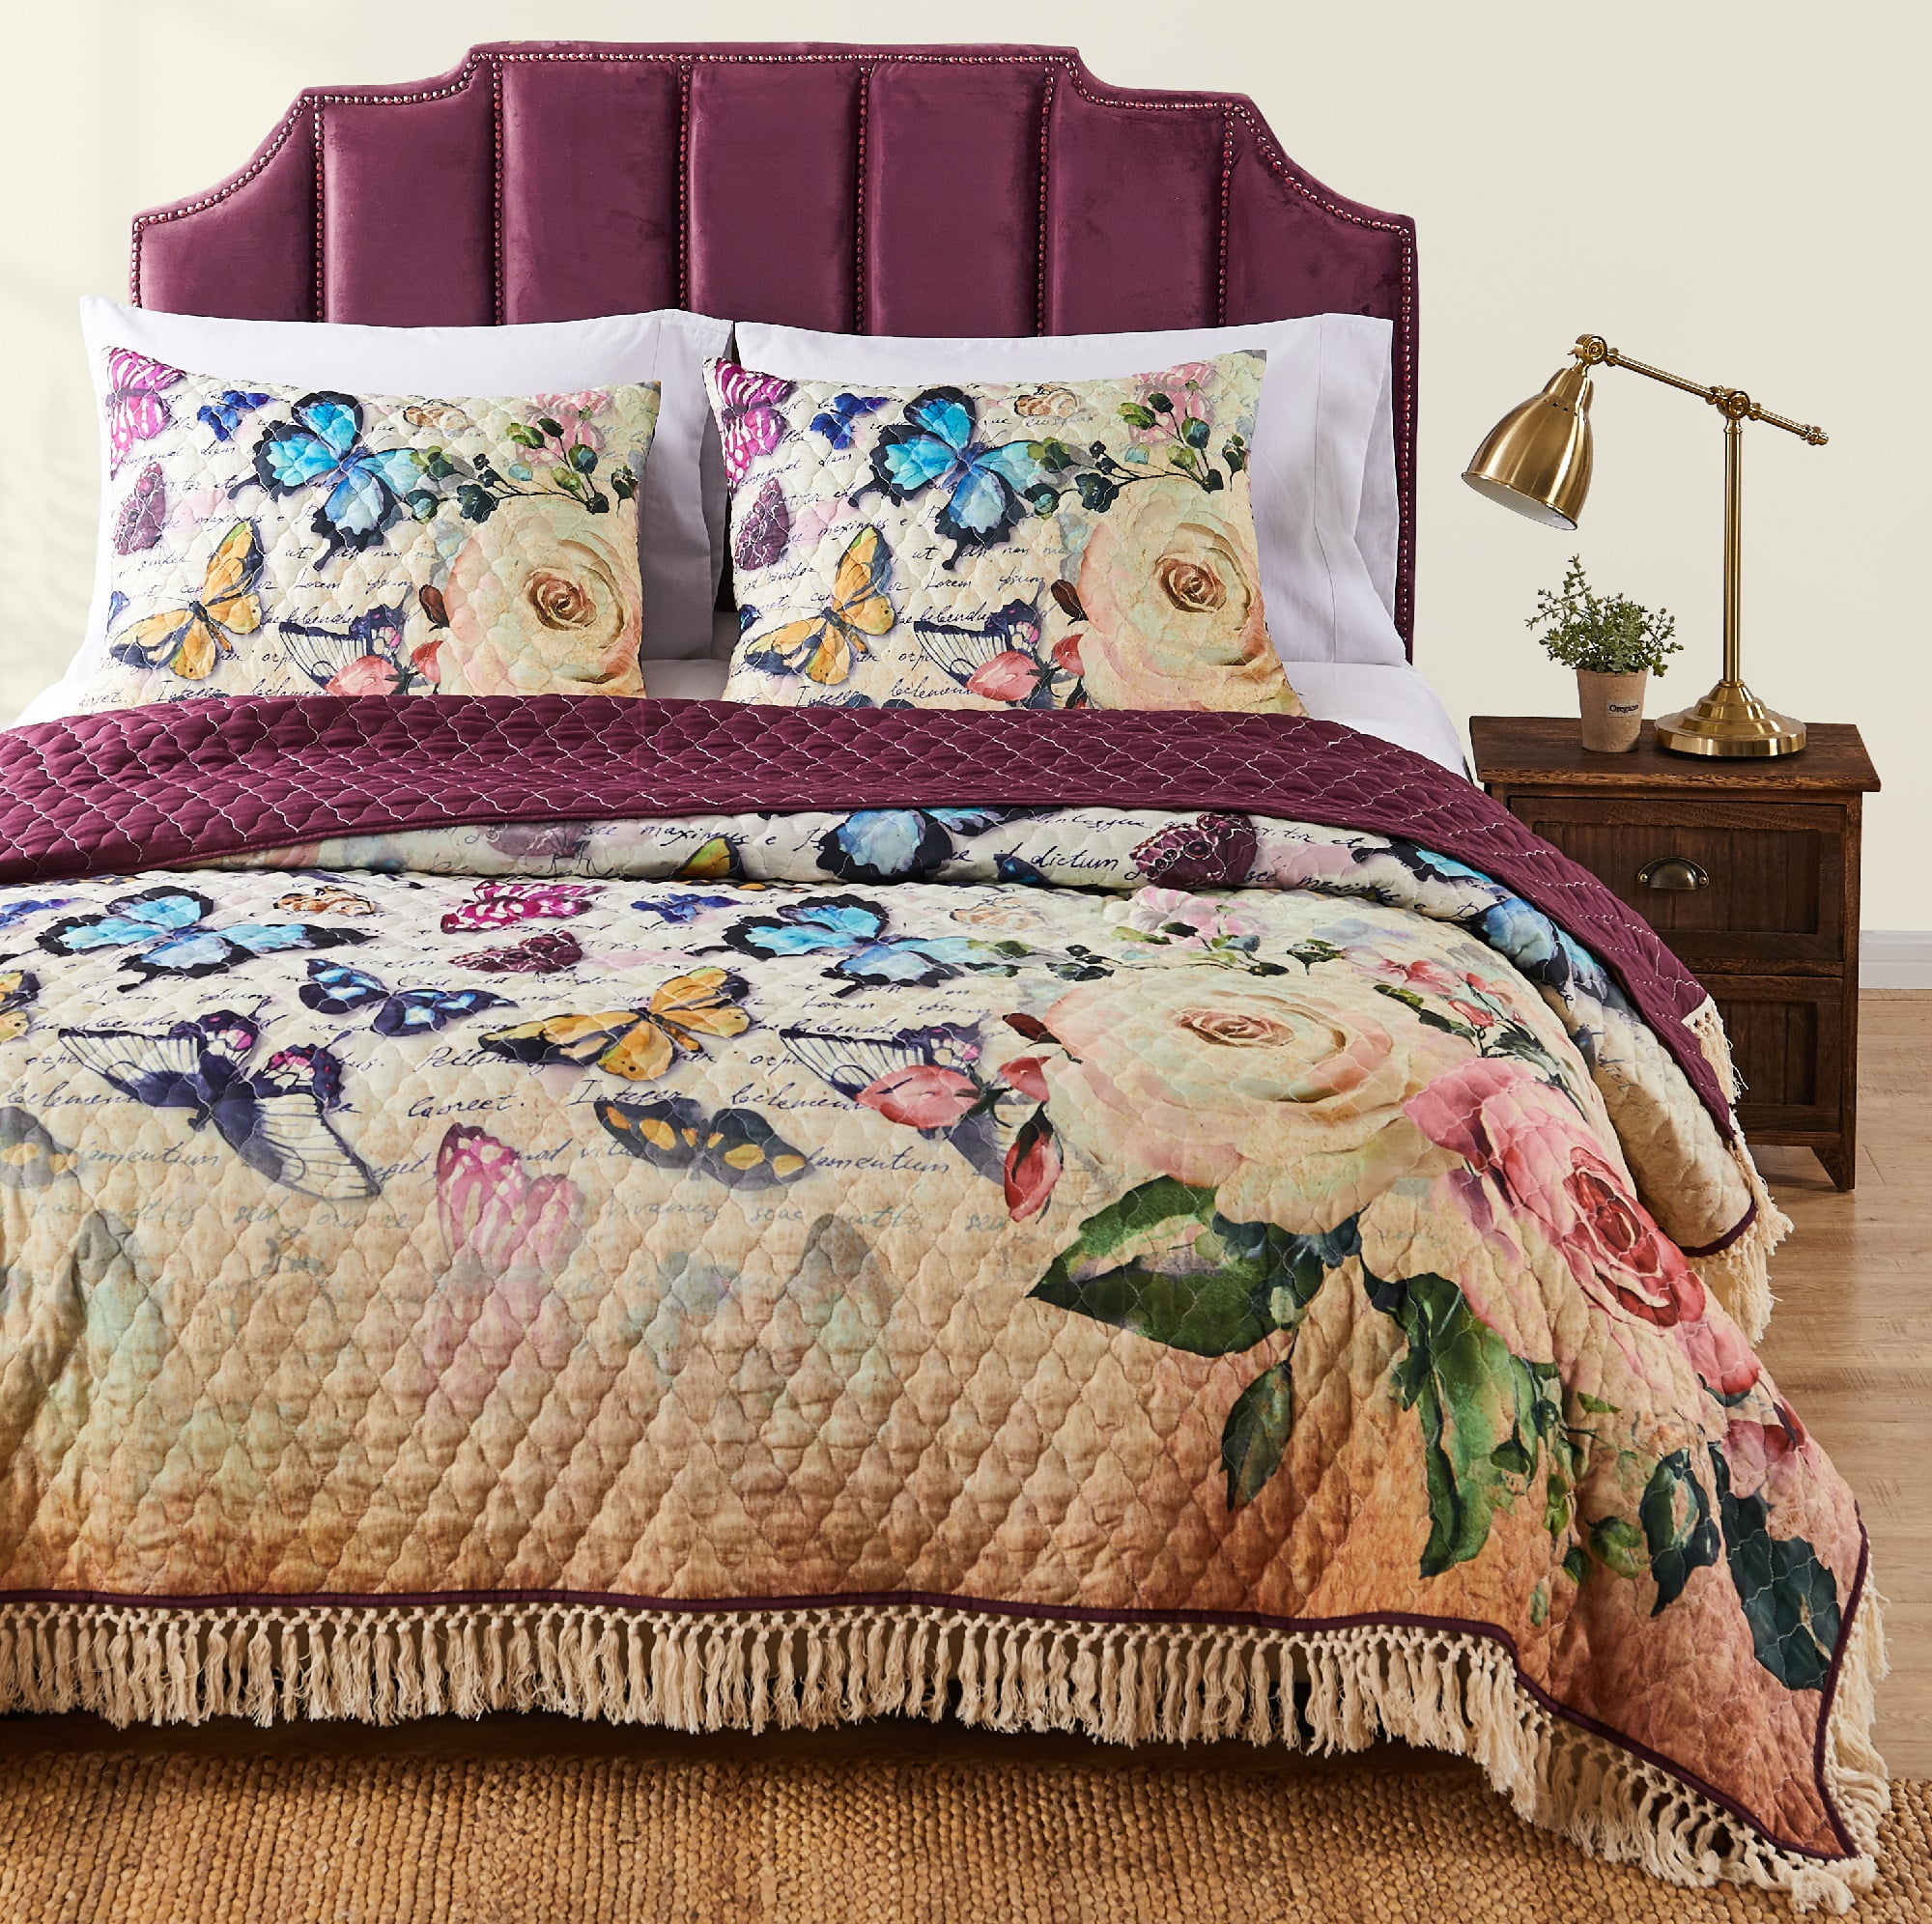 Designer GIGI EMBROIDERED Lace Polyester Duvet Cover Set.Or Bedspread All Size